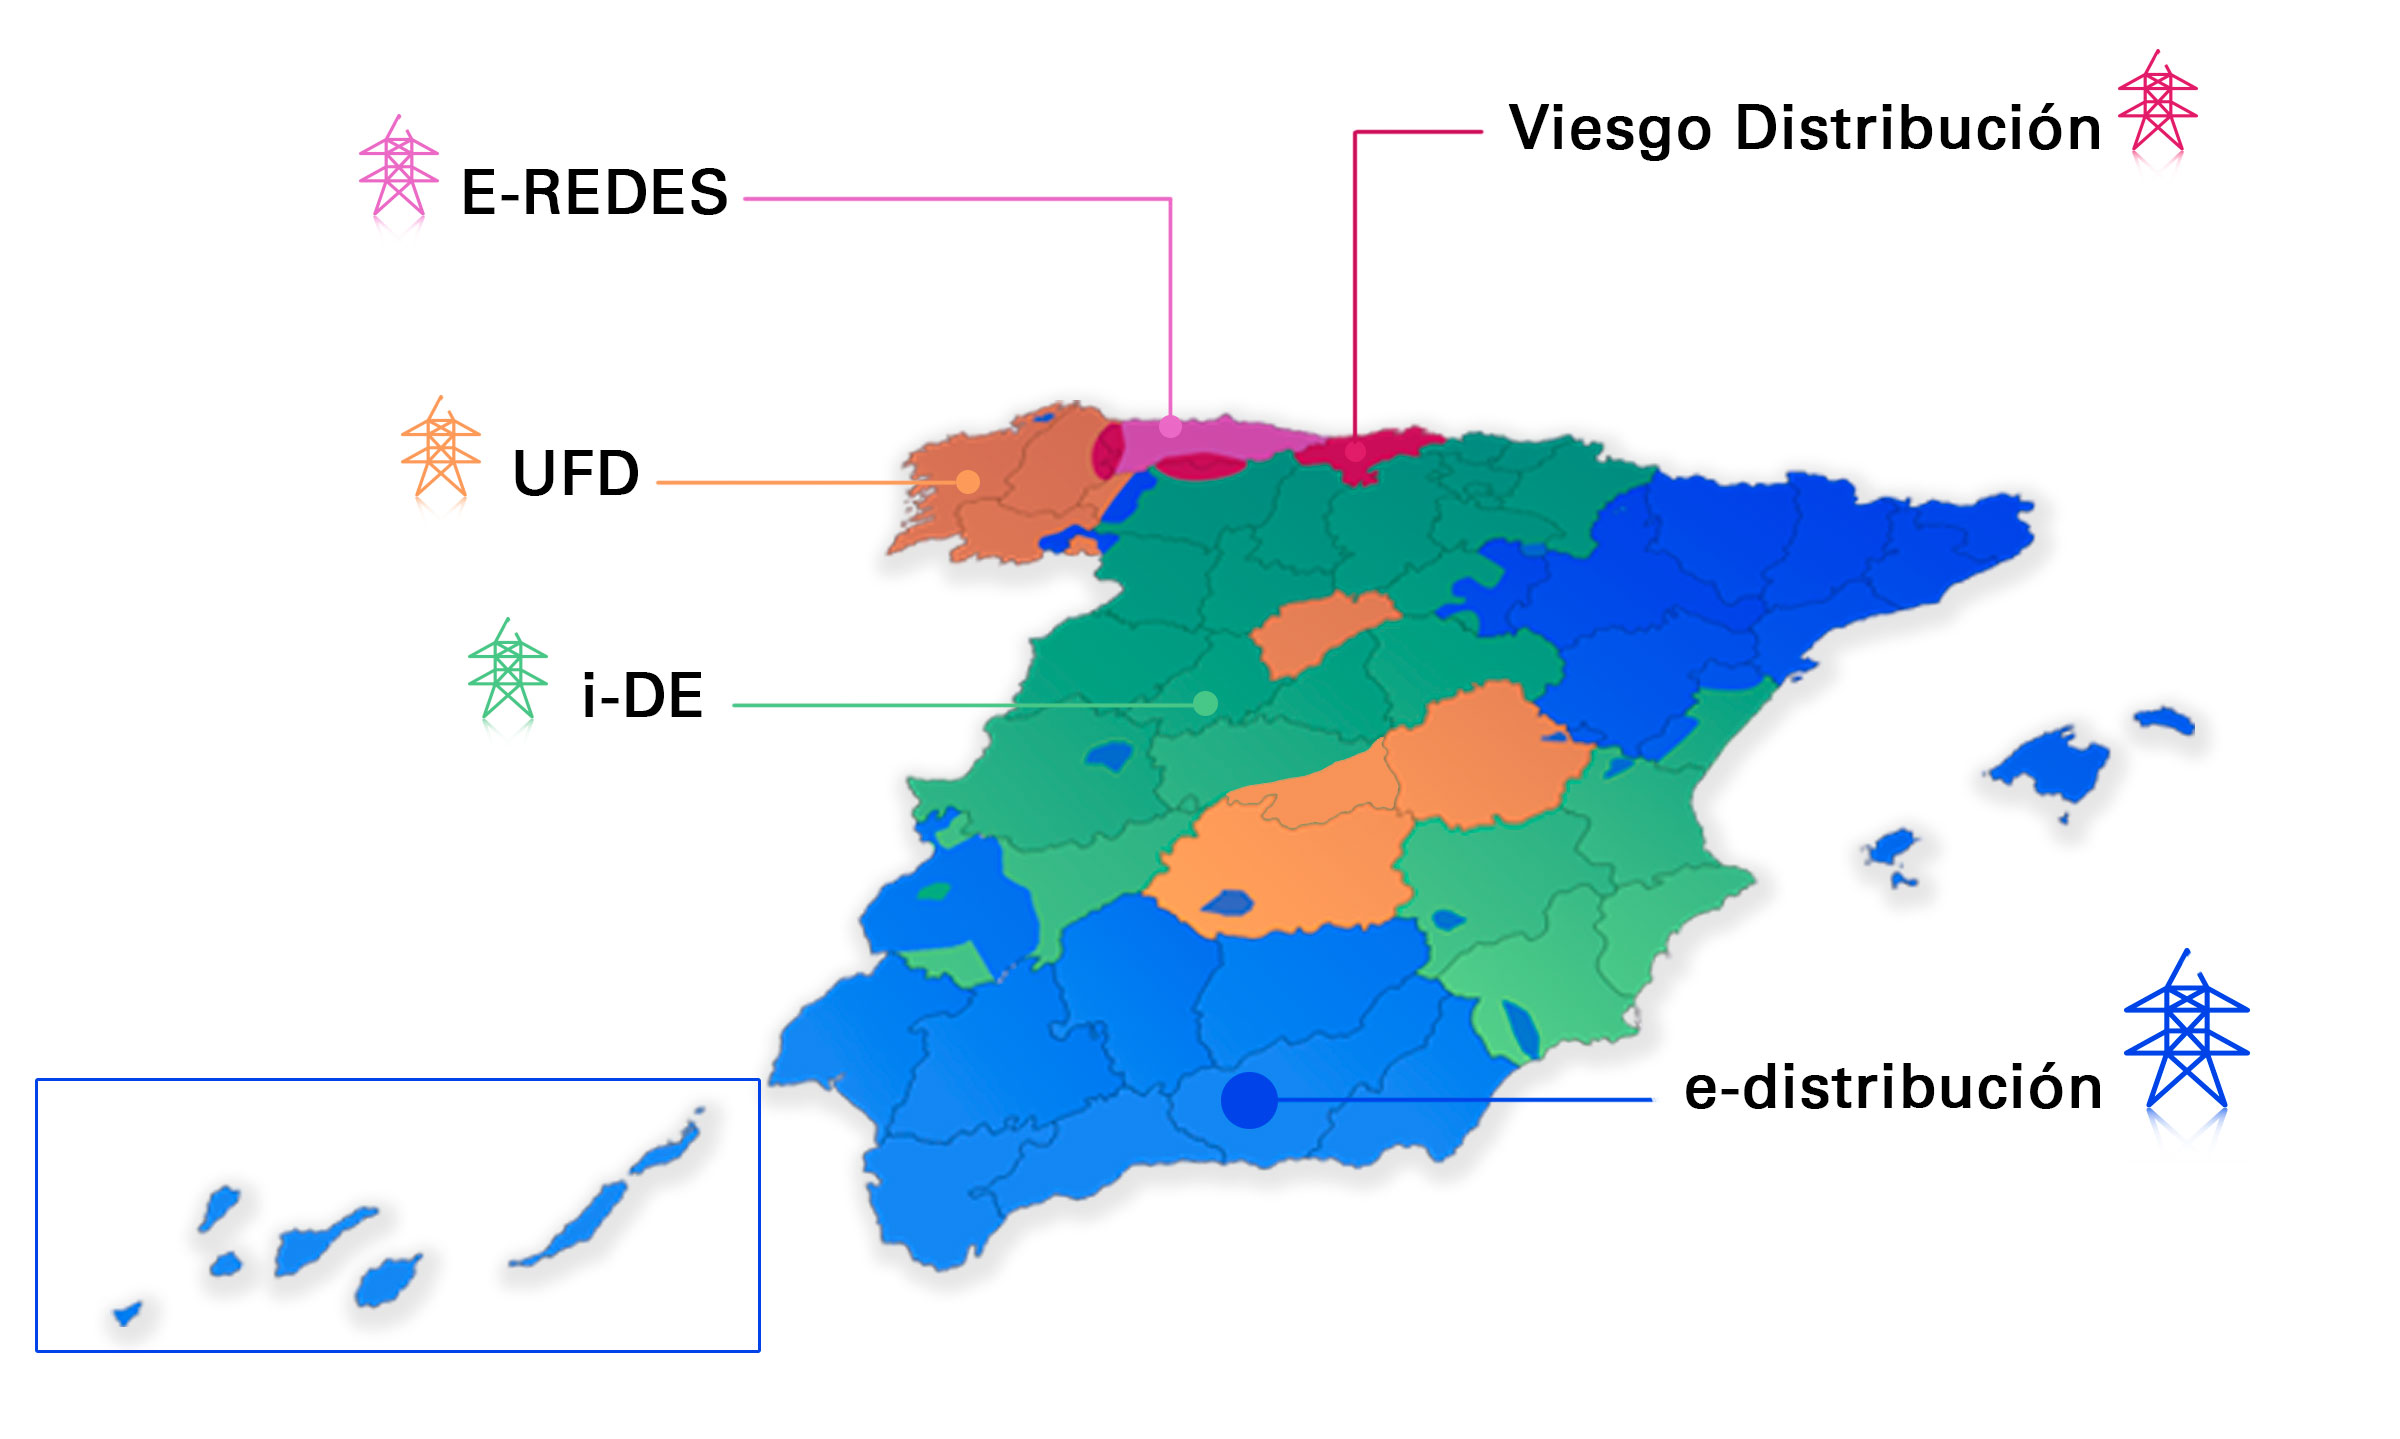 Mapa d'Espanya amb les zones corresponents a cada distribuïdora elèctrica. La informació s'explica a continuació en text.